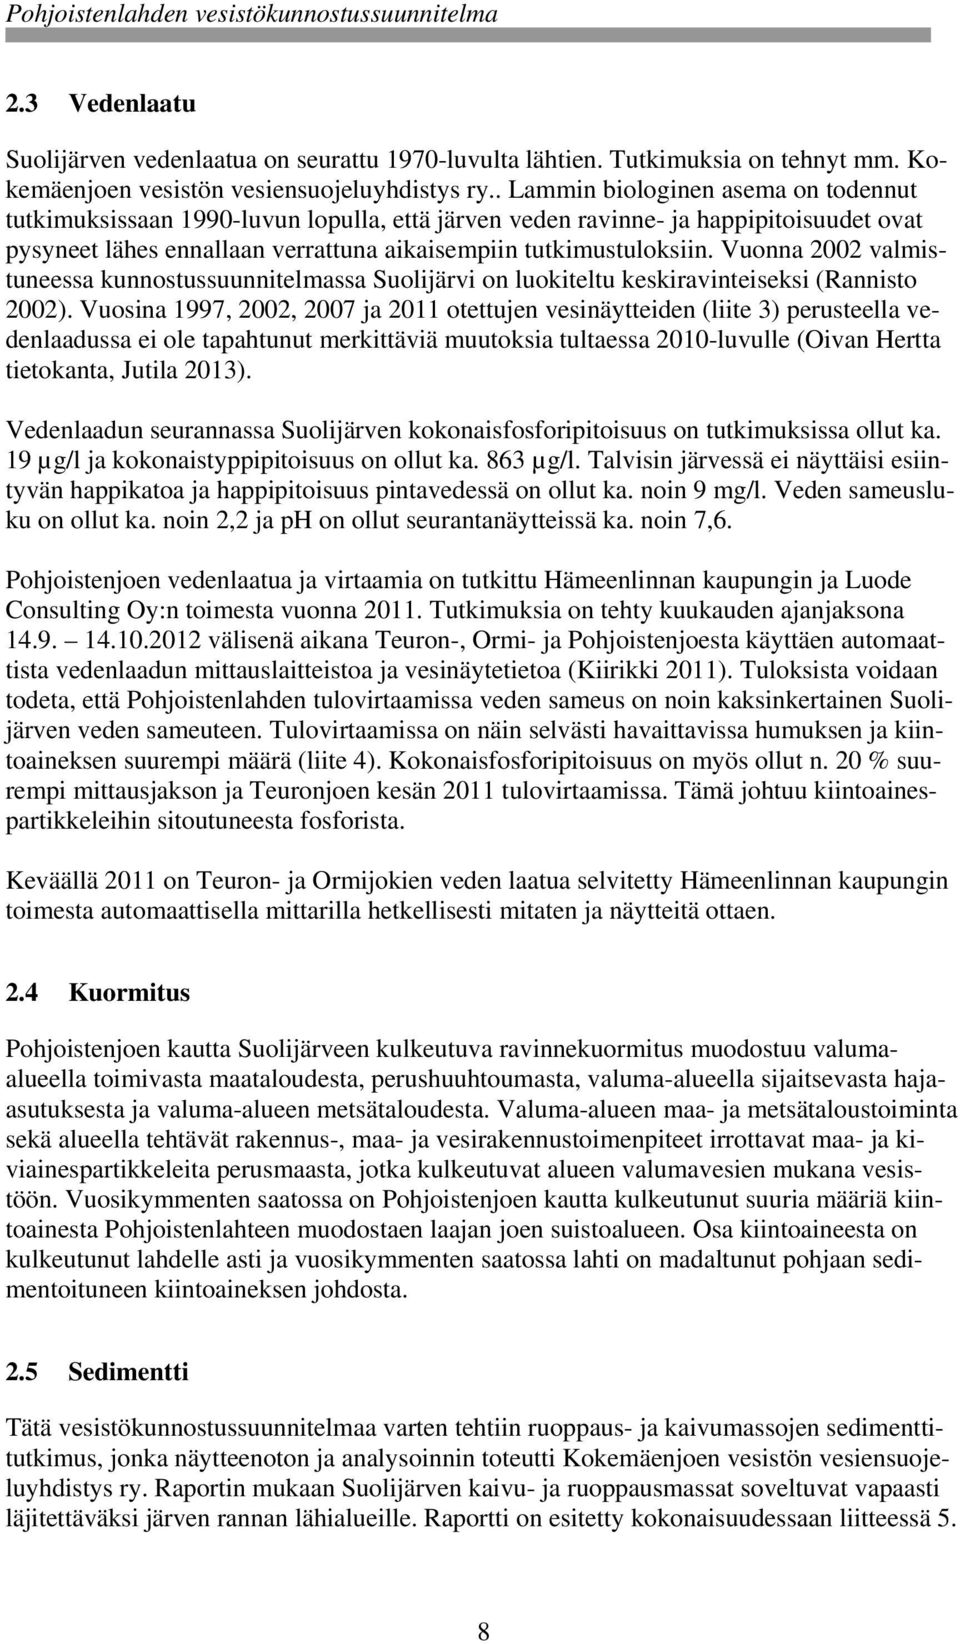 Vuonna 2002 valmistuneessa kunnostussuunnitelmassa Suolijärvi on luokiteltu keskiravinteiseksi (Rannisto 2002).